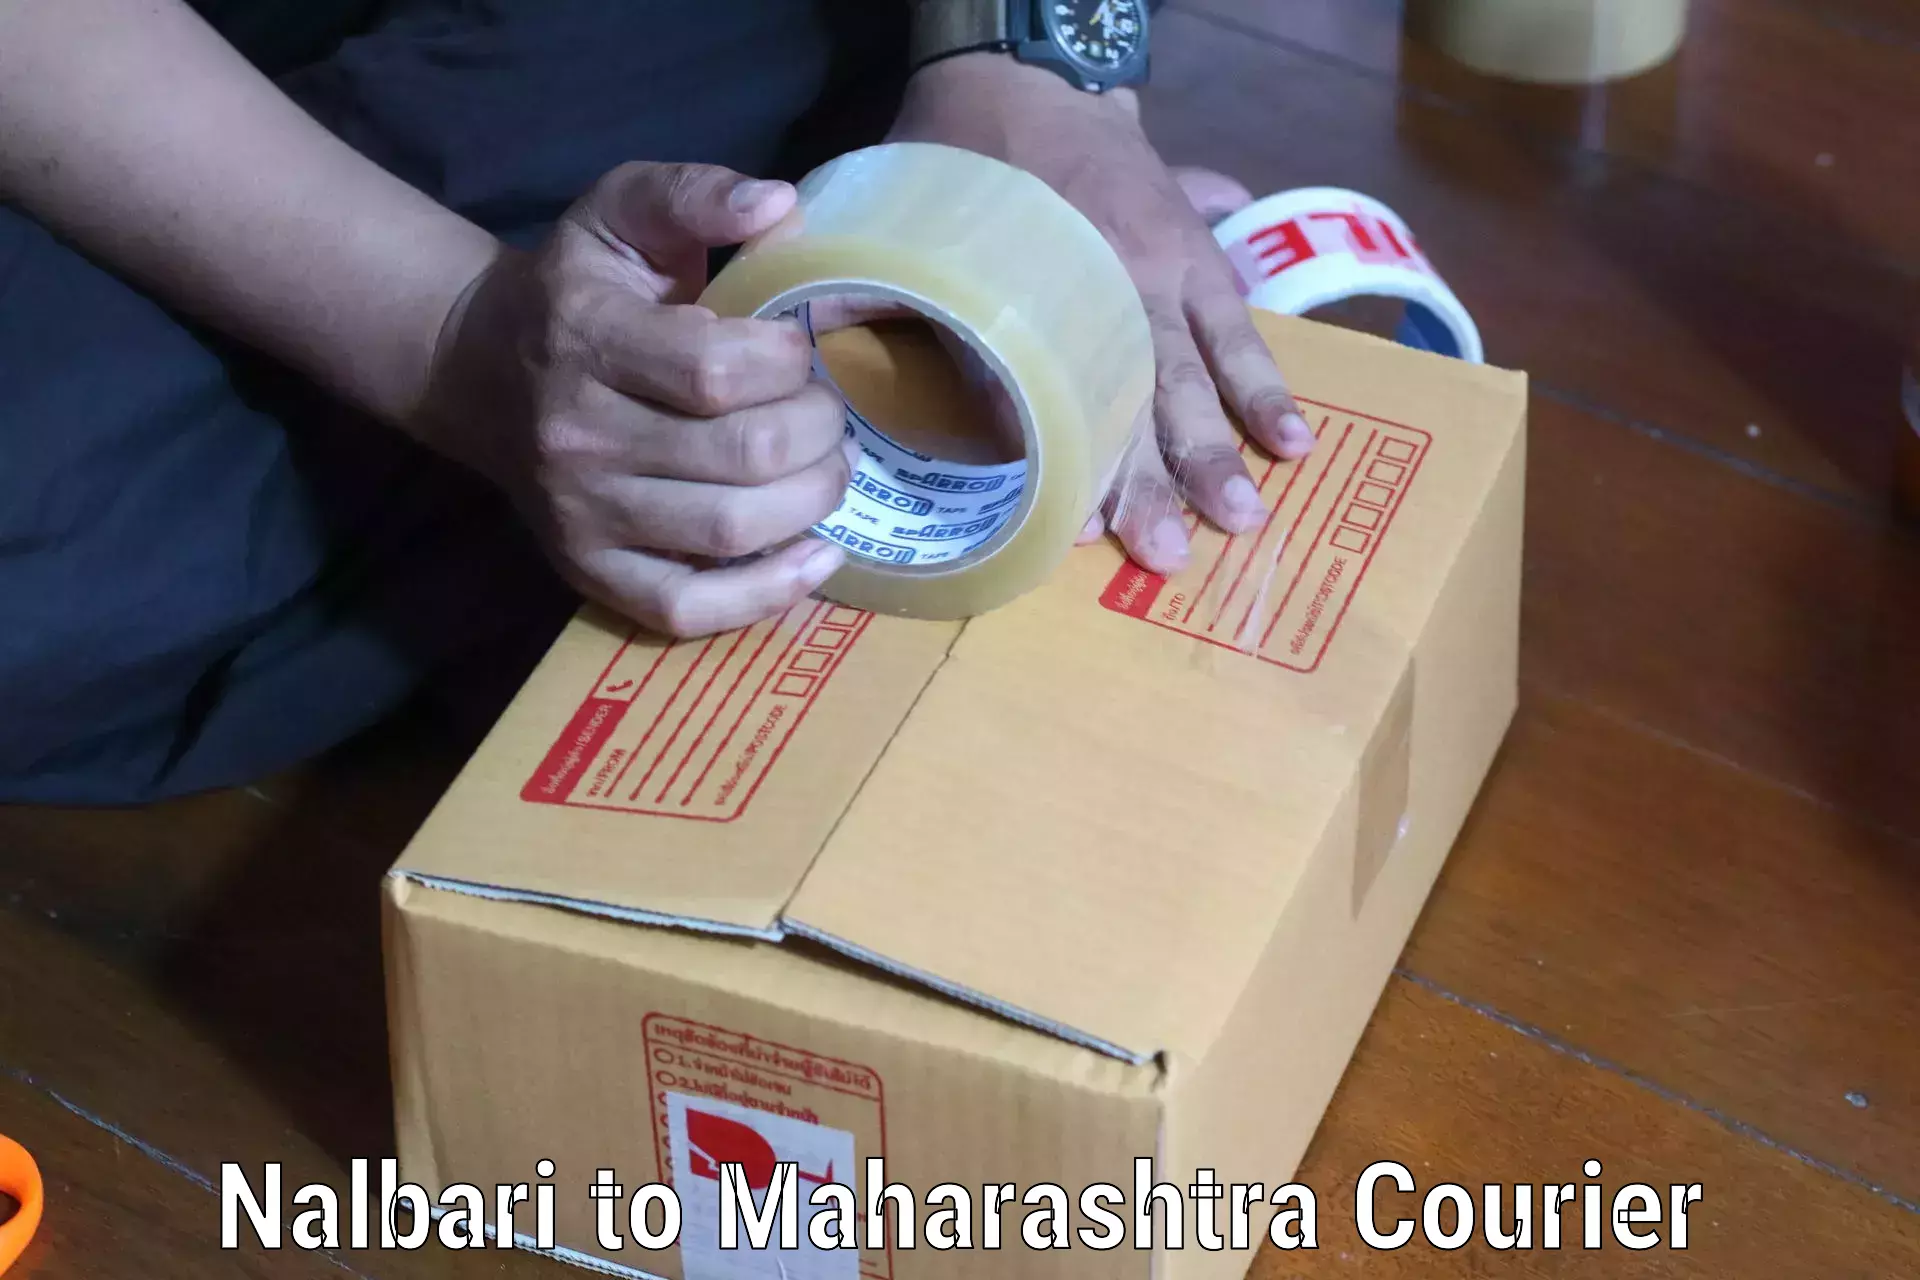 Streamlined shipping process Nalbari to Maharashtra